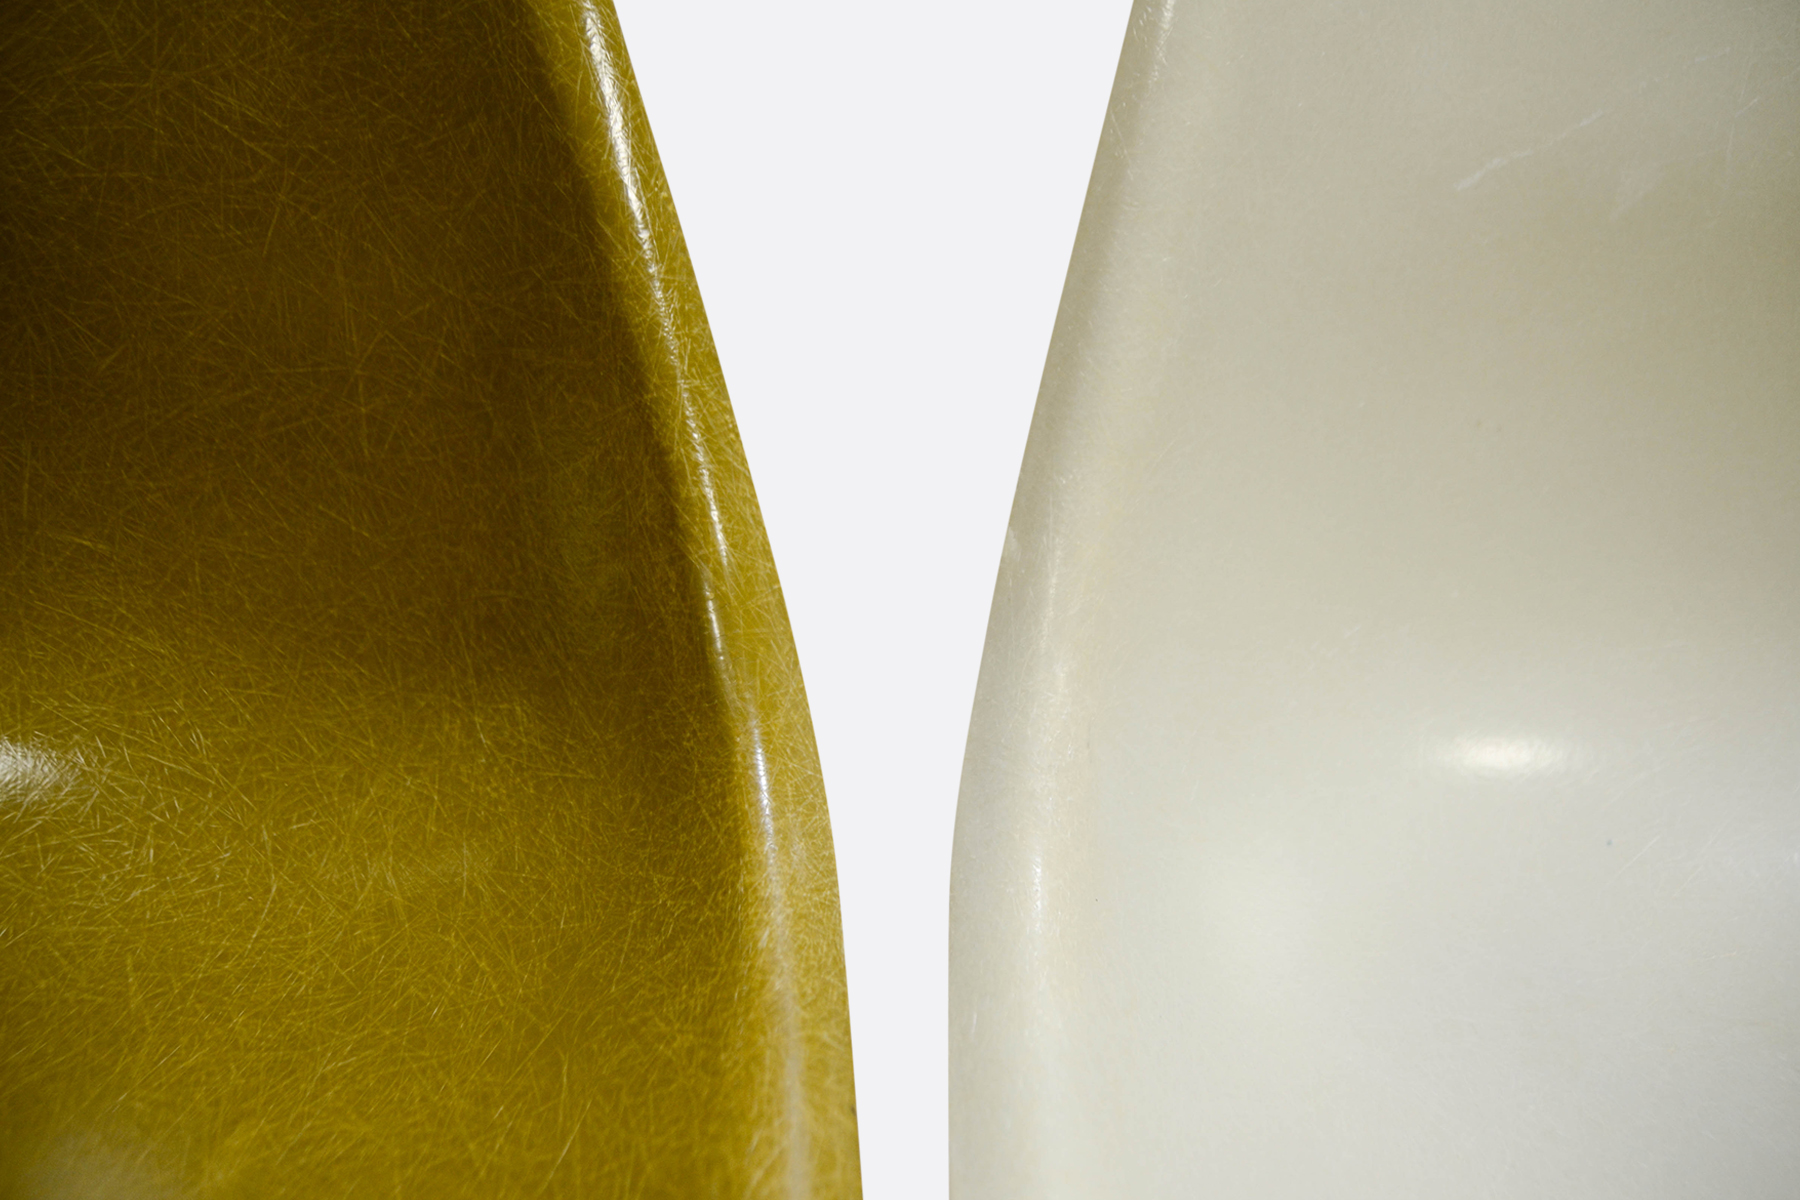 Eames DSW set of 4 Mustard - Off White - Seafoam Green - Terracotta2